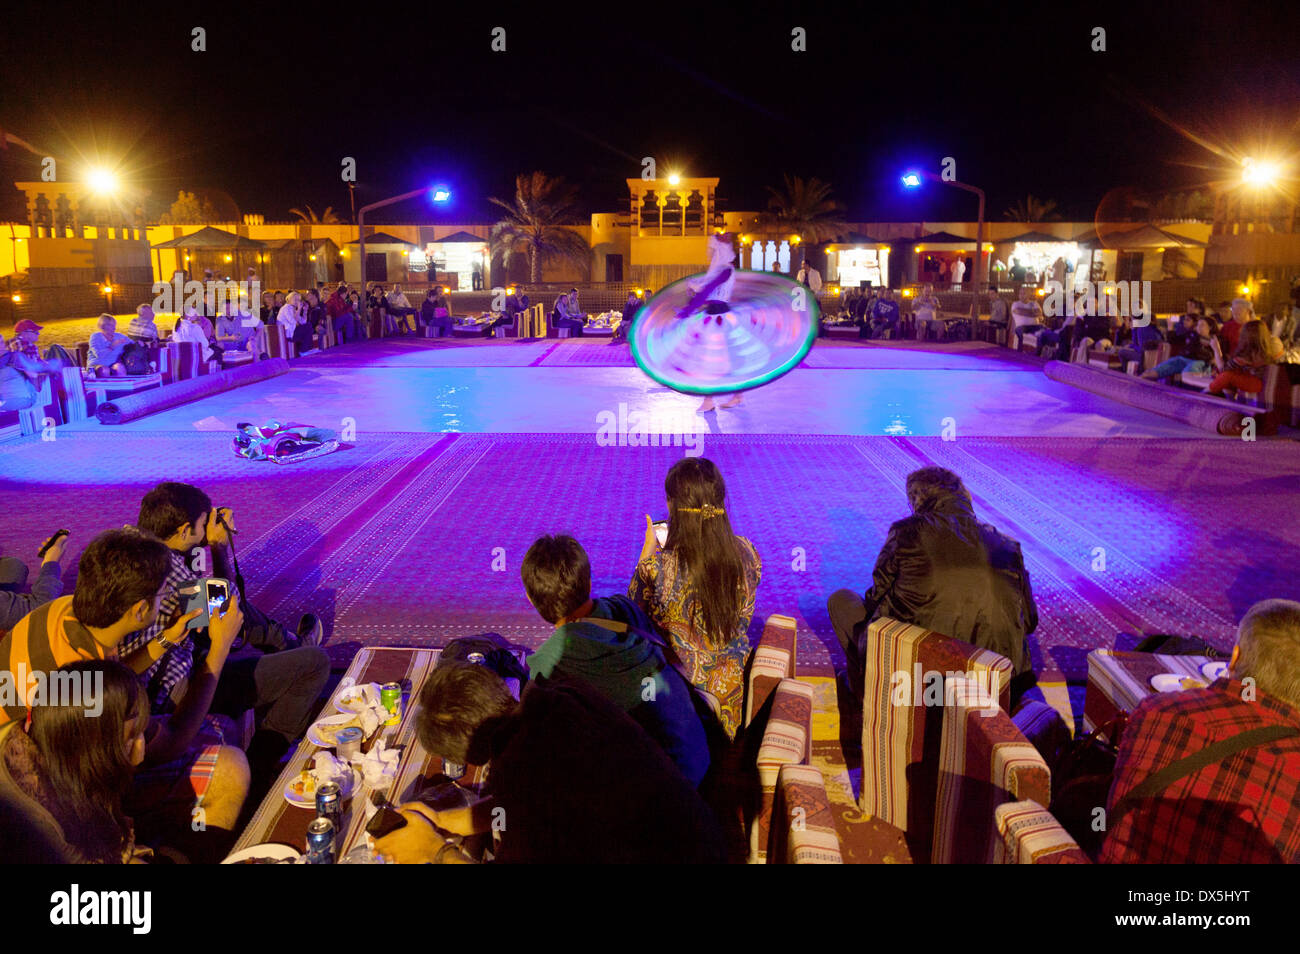 Touristen, die gerade eine traditionelle Tanoura Tanzshow als Bestandteil einer Wüstensafari Reise, Dubai, Vereinigte Arabische Emirate, Vereinigte Arabische Emirate Naher Osten Stockfoto